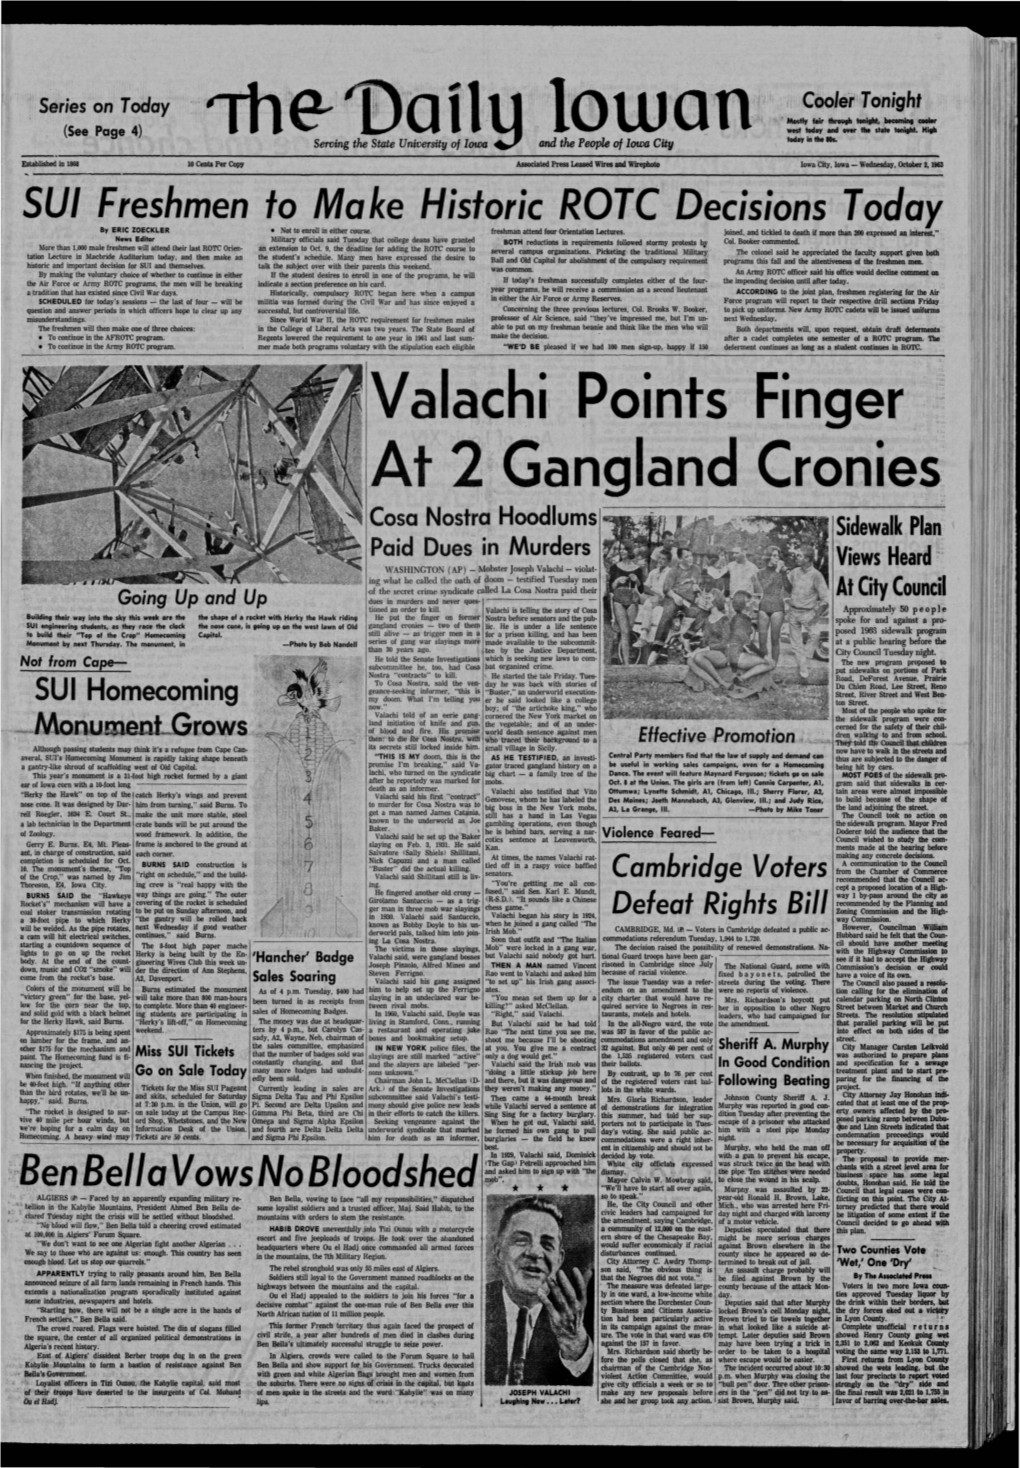 Daily Iowan (Iowa City, Iowa), 1963-10-02